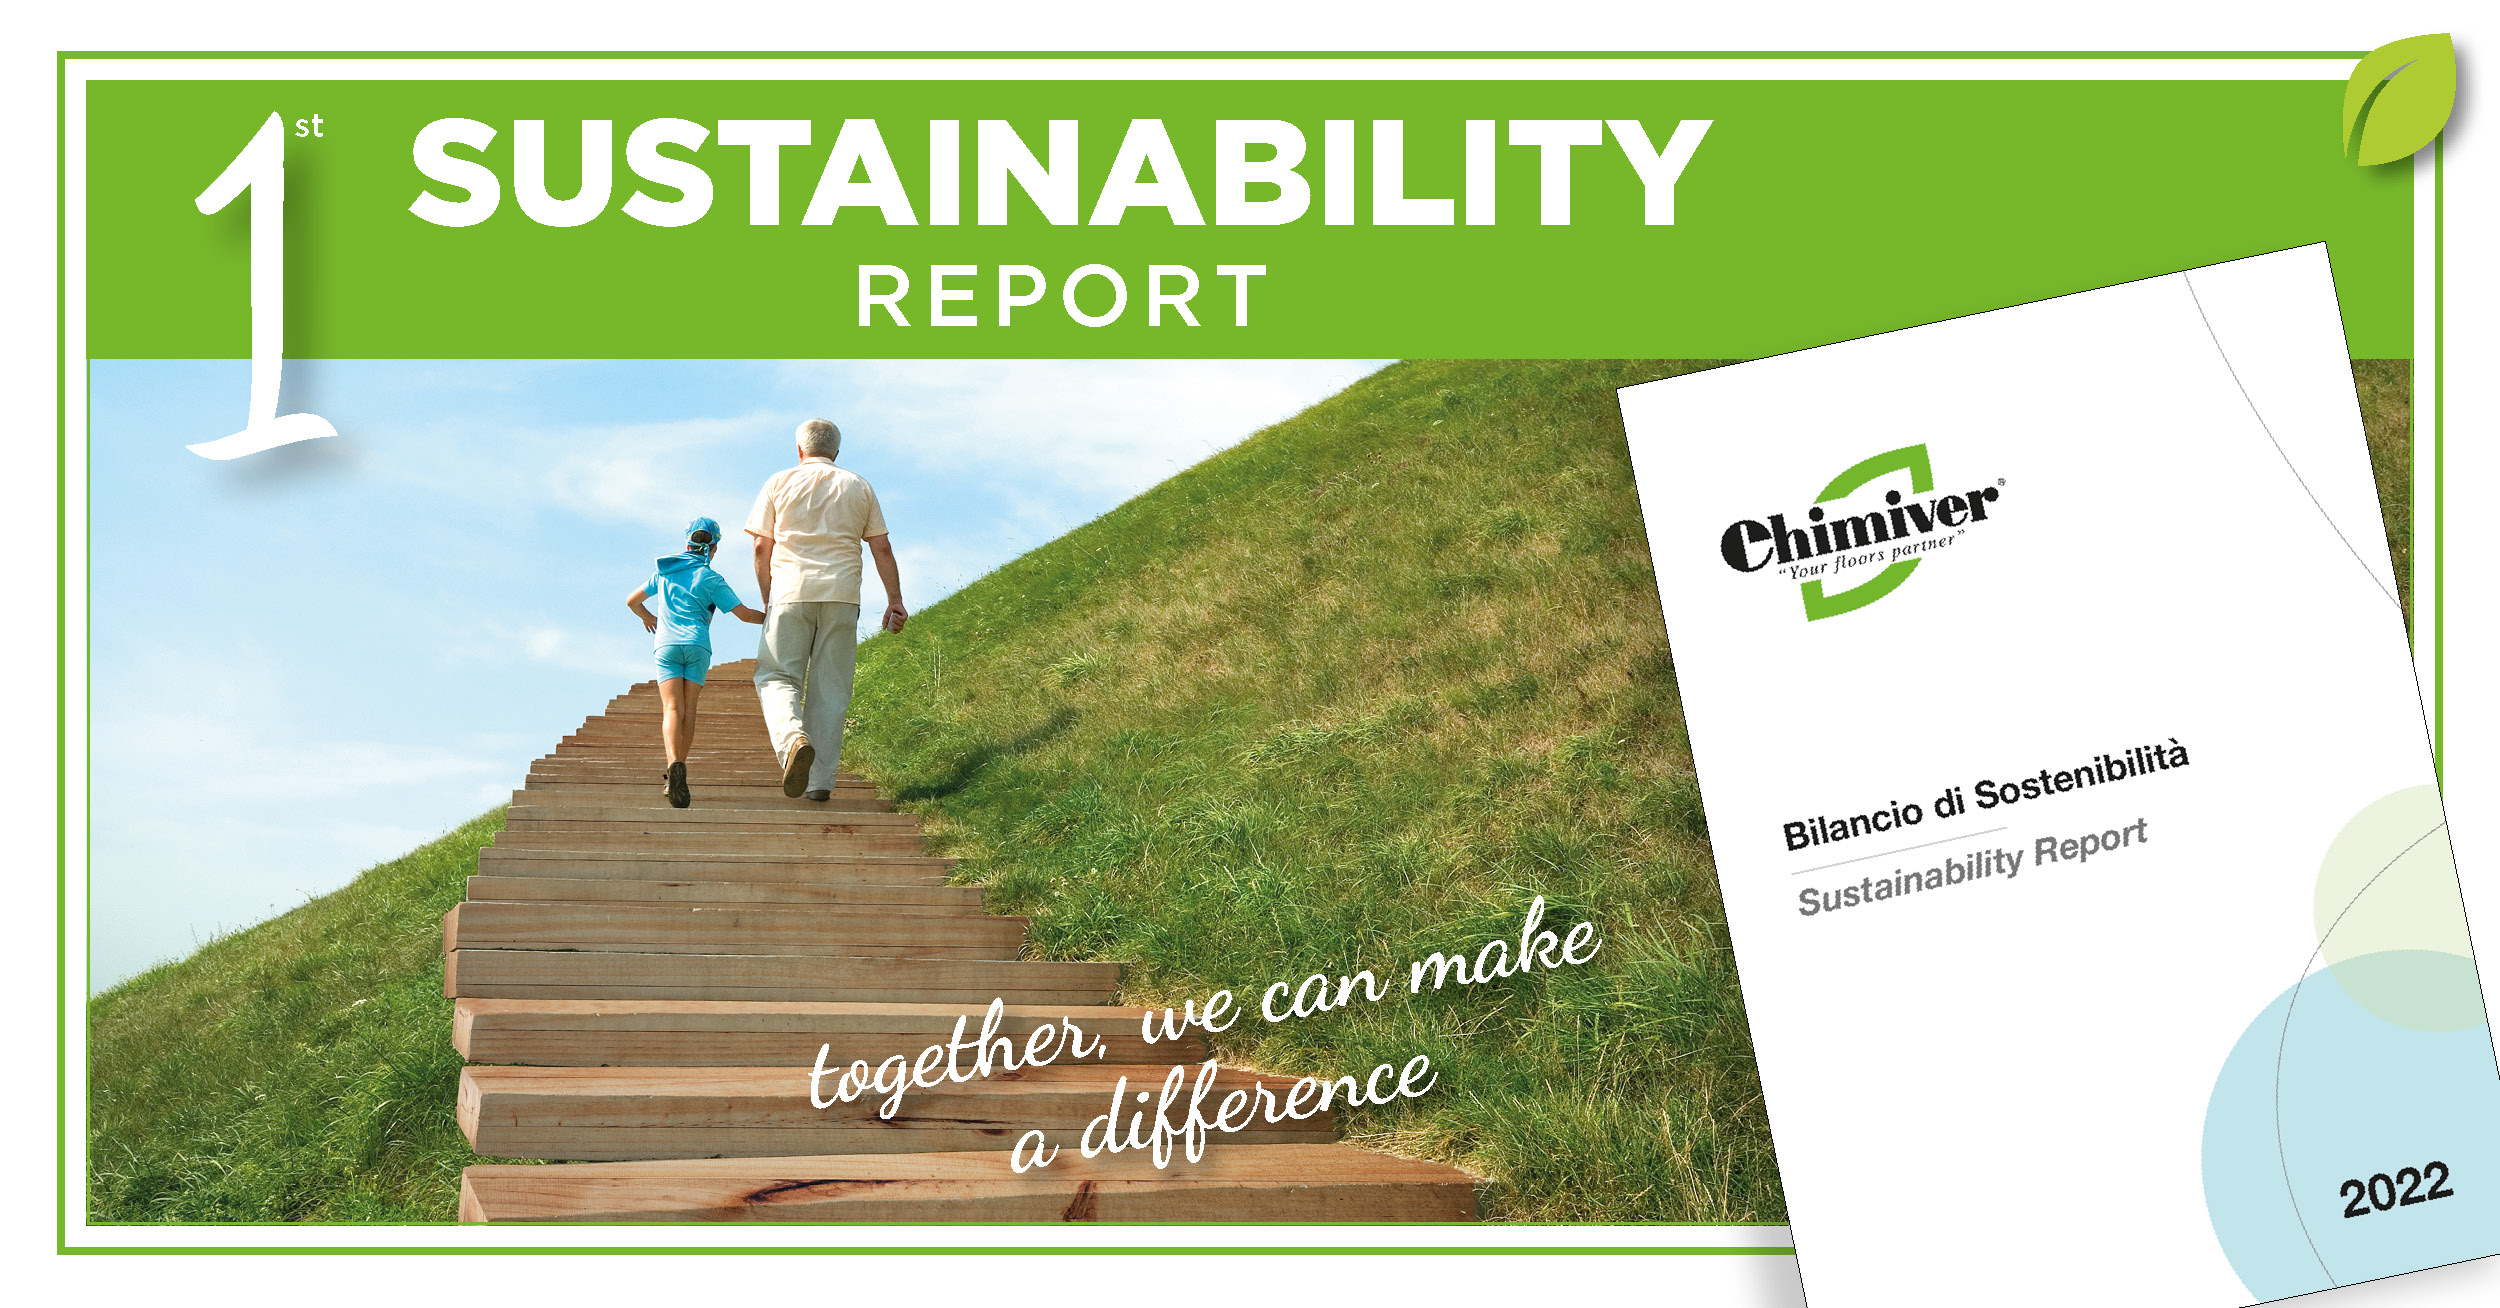 COMUNICATO STAMPA: Chimiver presenta il suo primo Bilancio di Sostenibilità